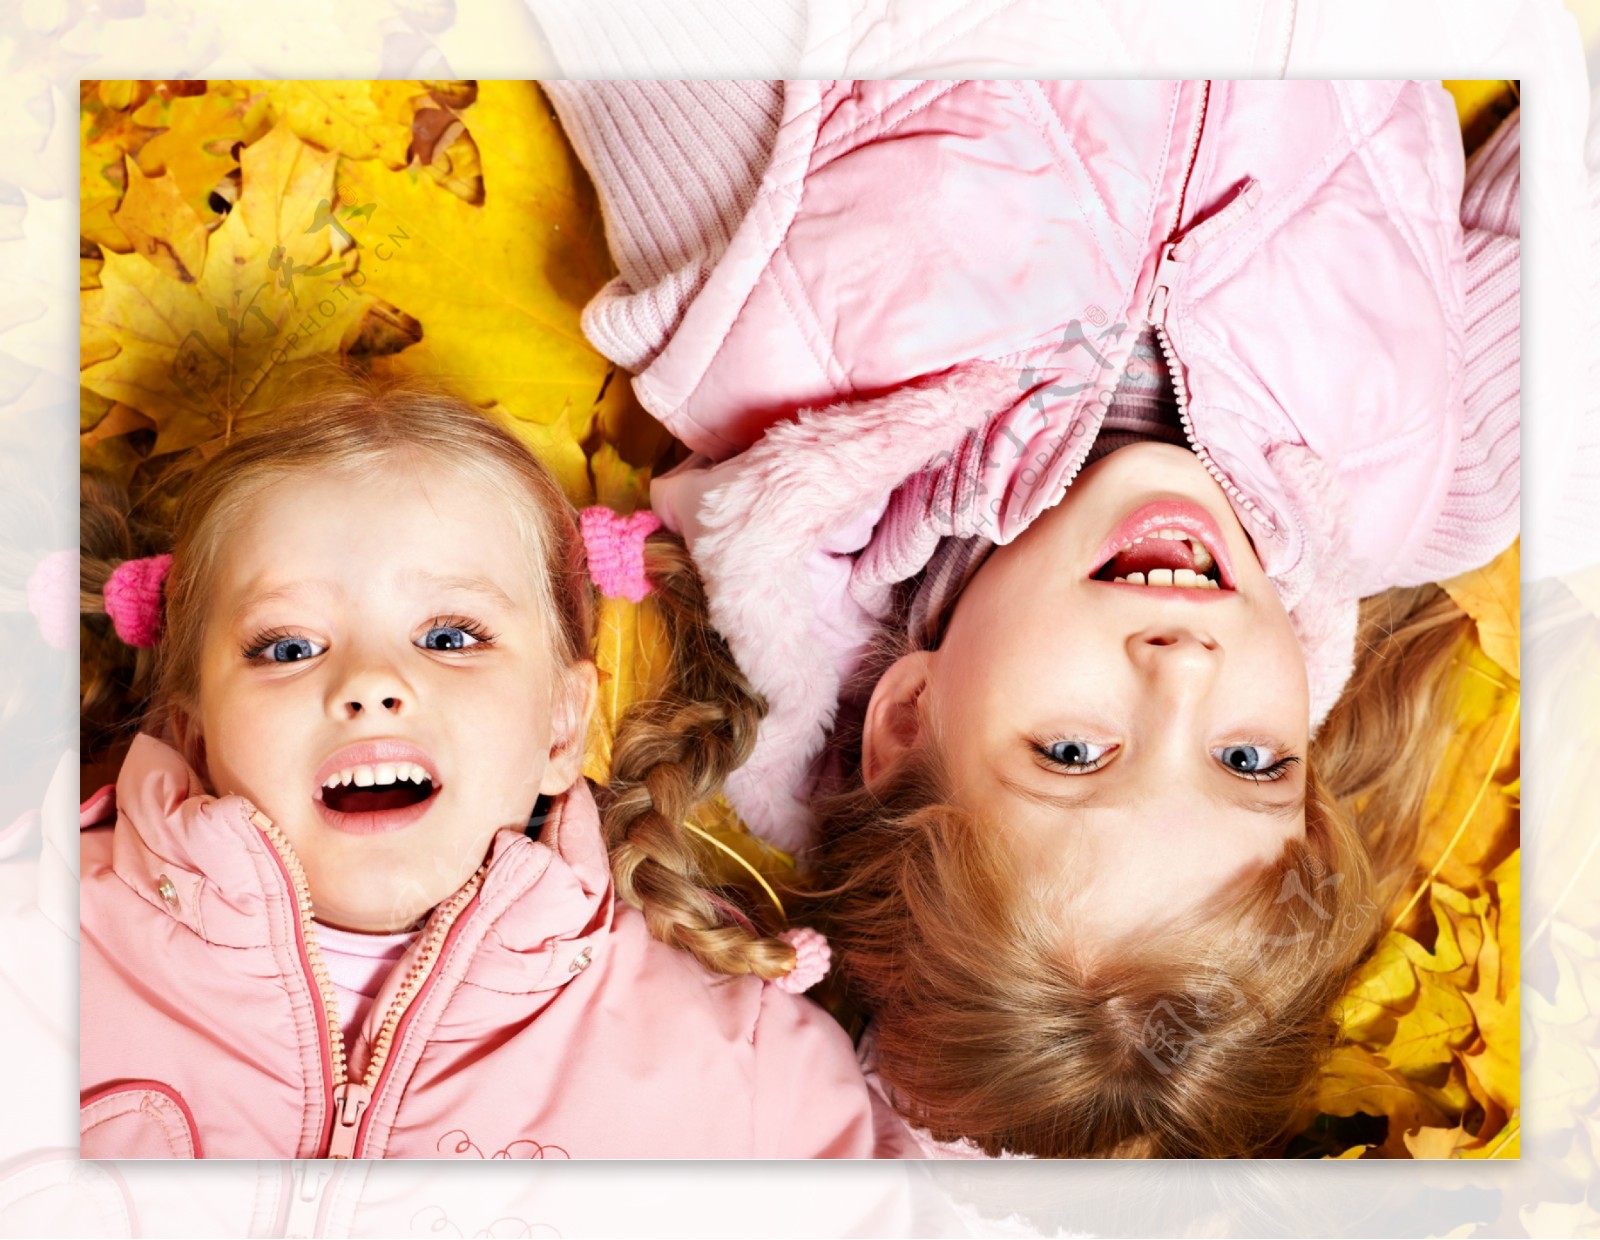 躺在黄色枫叶上的两个女孩图片